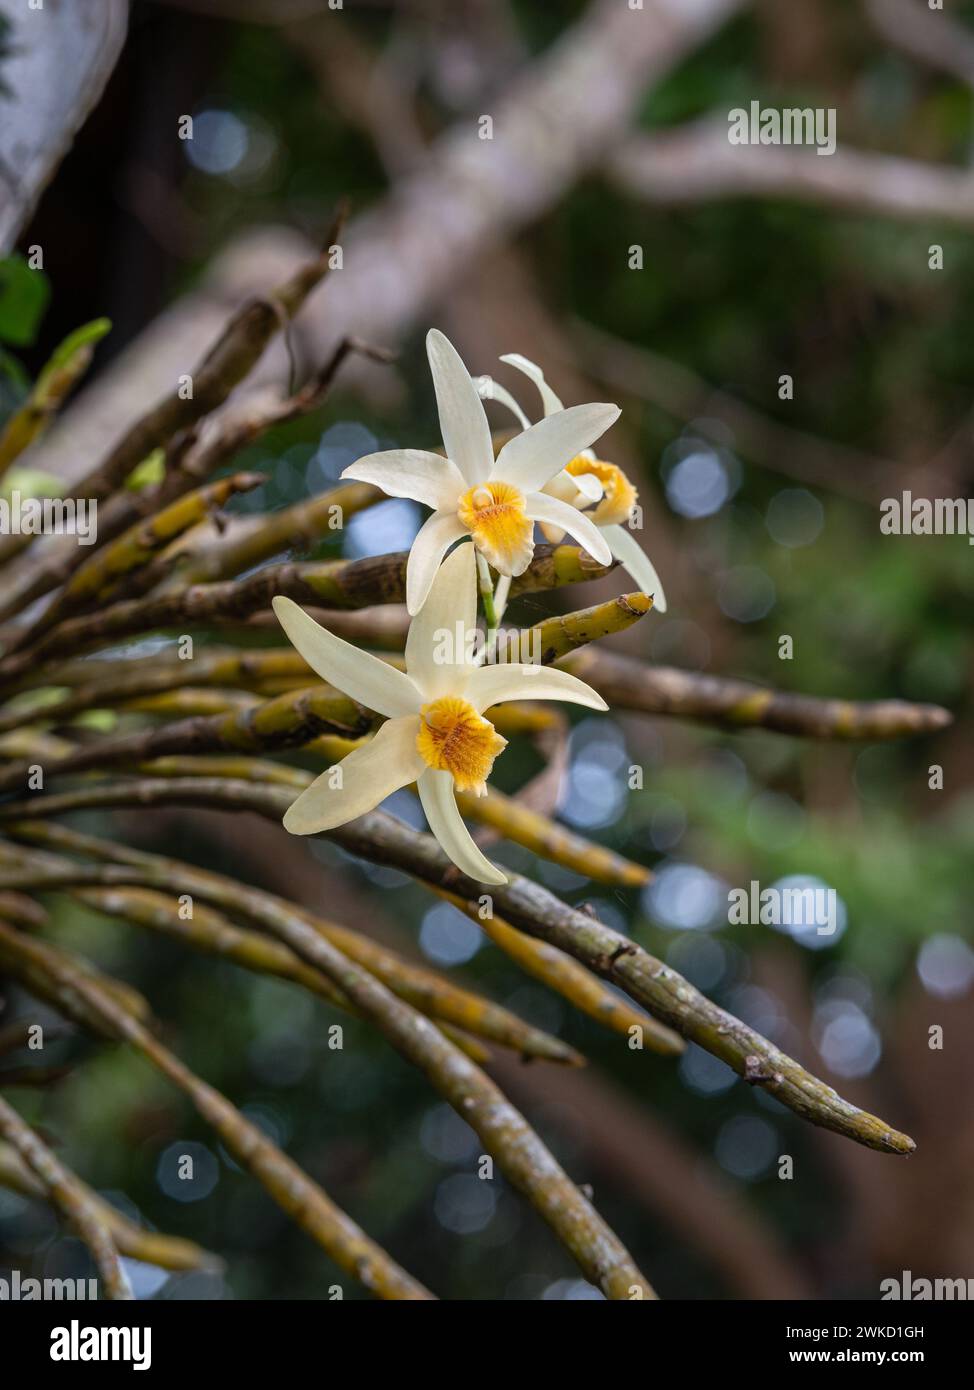 Vue rapprochée des fleurs jaune crème et orange de l'espèce d'orchidée épiphyte dendrobium heterocarpum fleurissant à l'extérieur dans un jardin tropical Banque D'Images